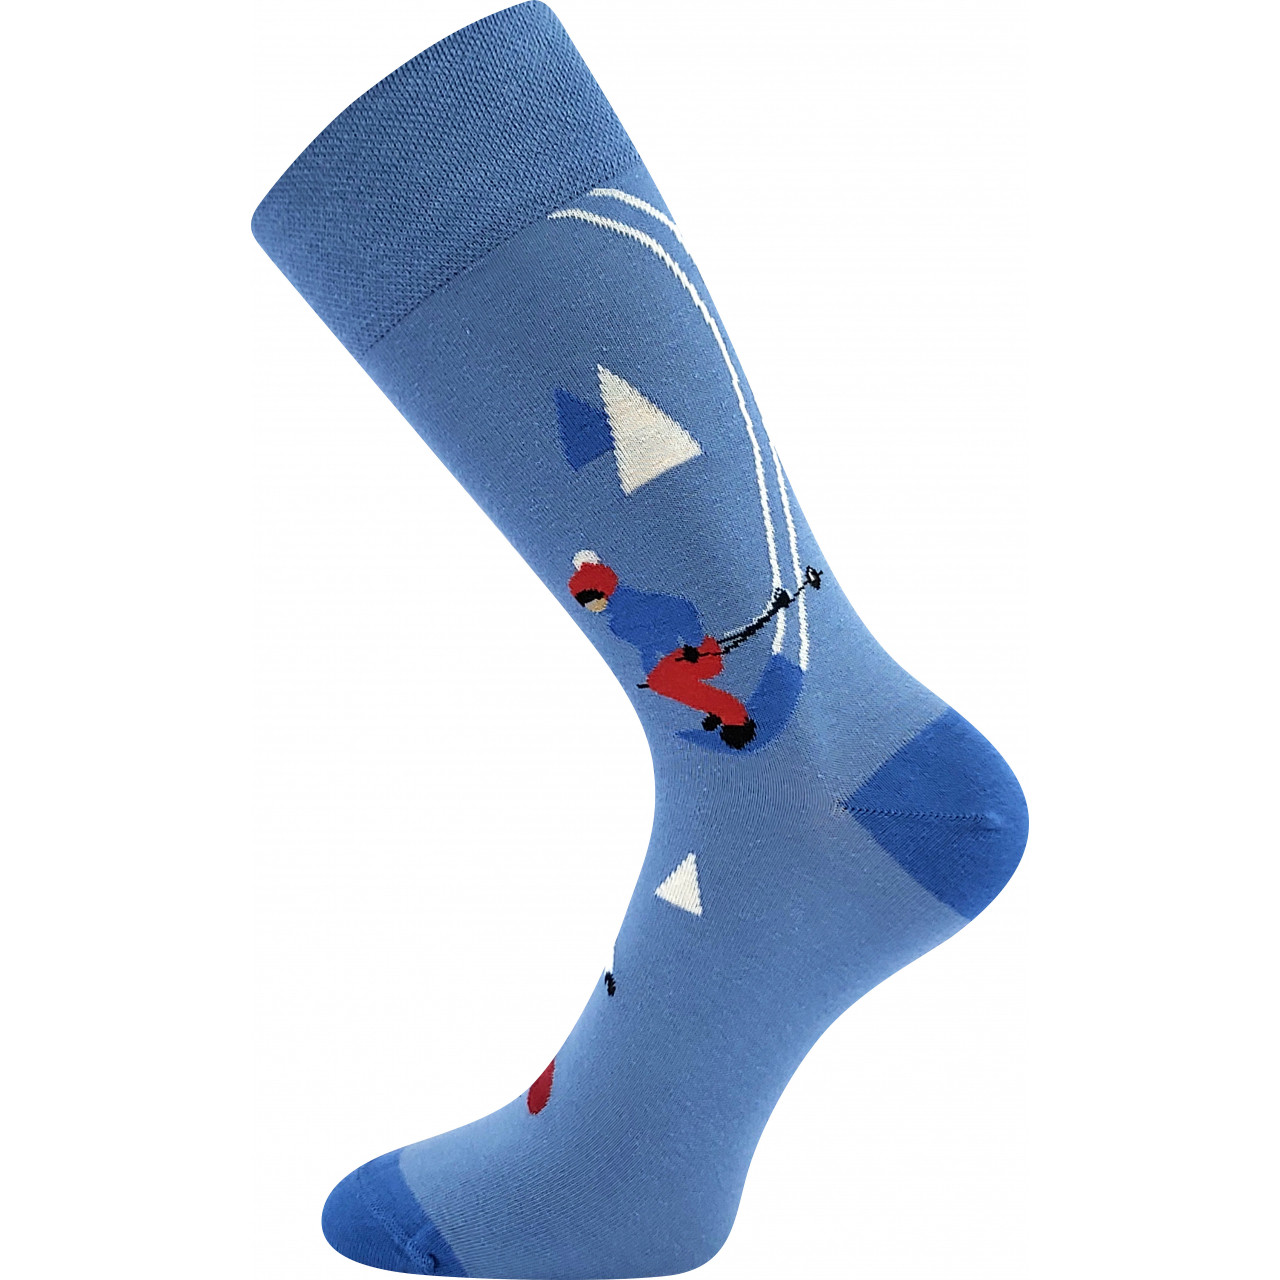 Ponožky společenské unisex Lonka Twidor Hory - modré, 43-46